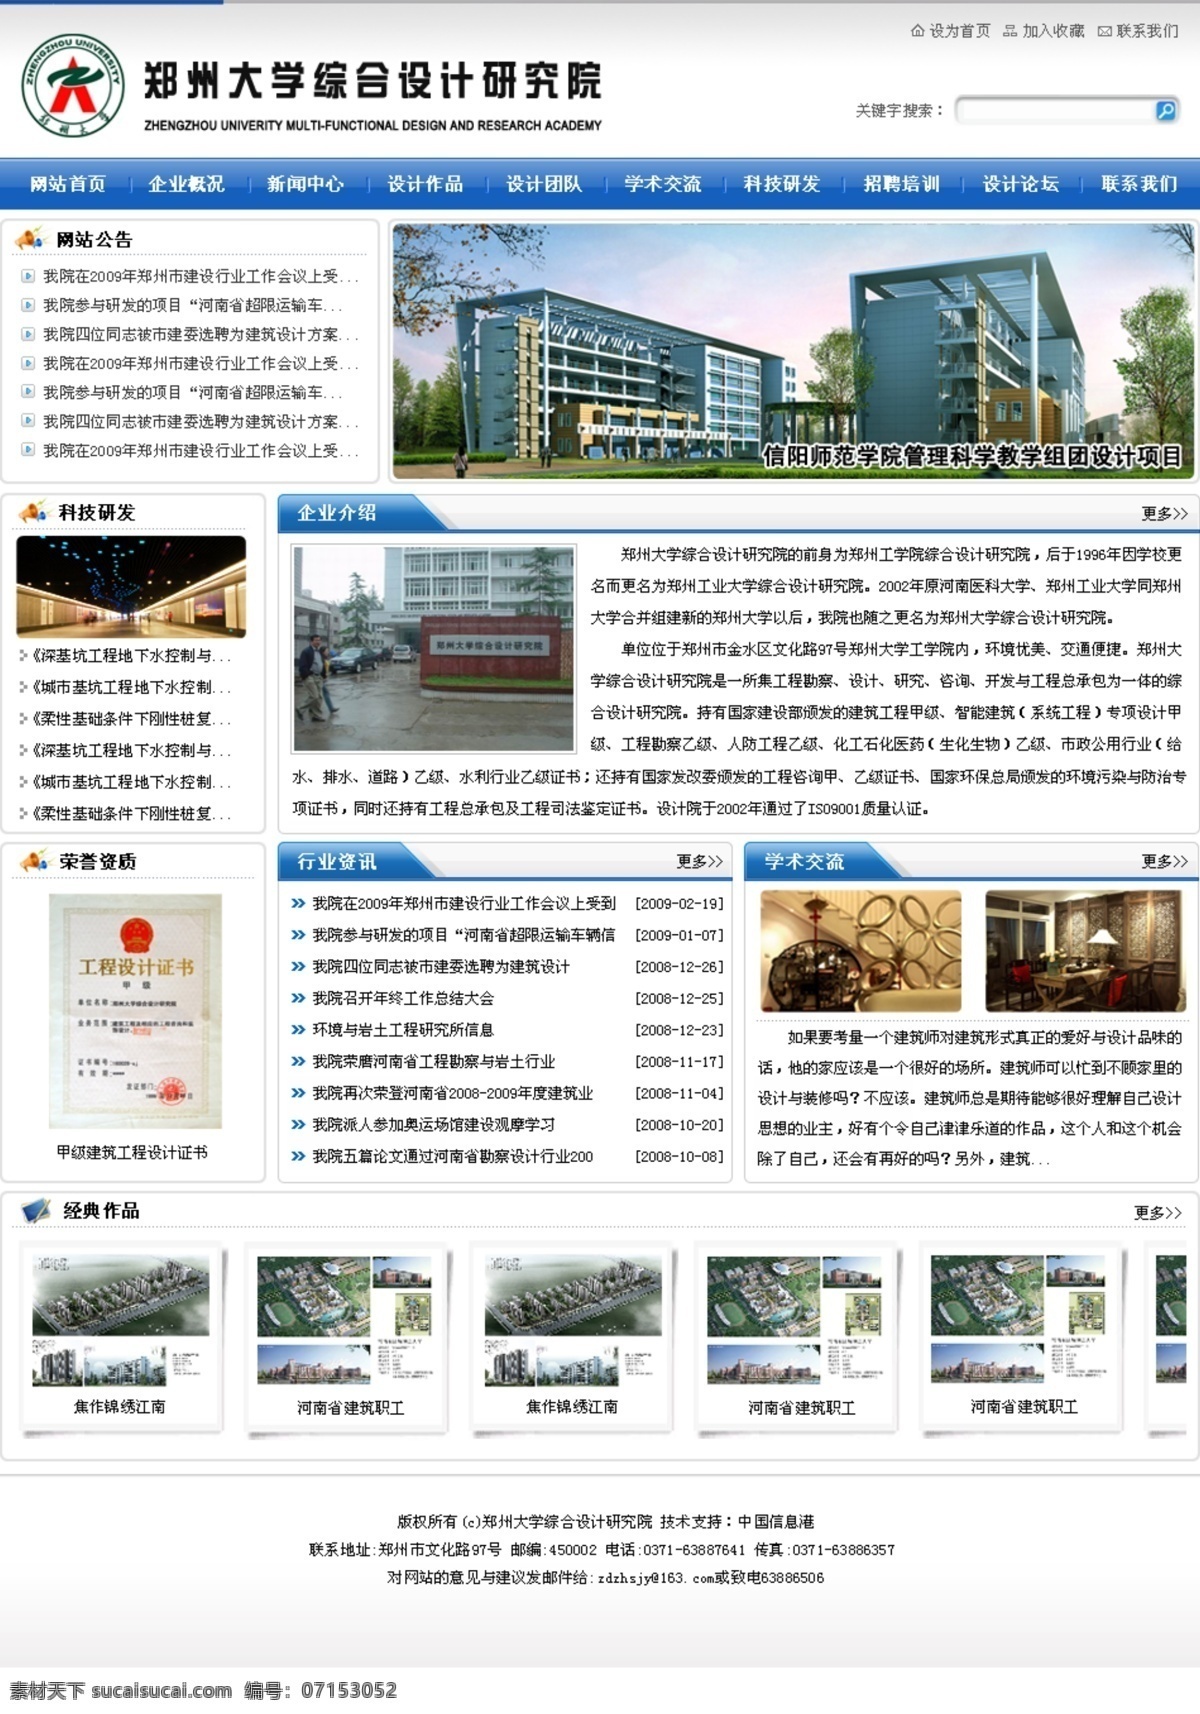 综合 研究院 网页模板 中国风格 综合设计 蓝色色调 网页素材